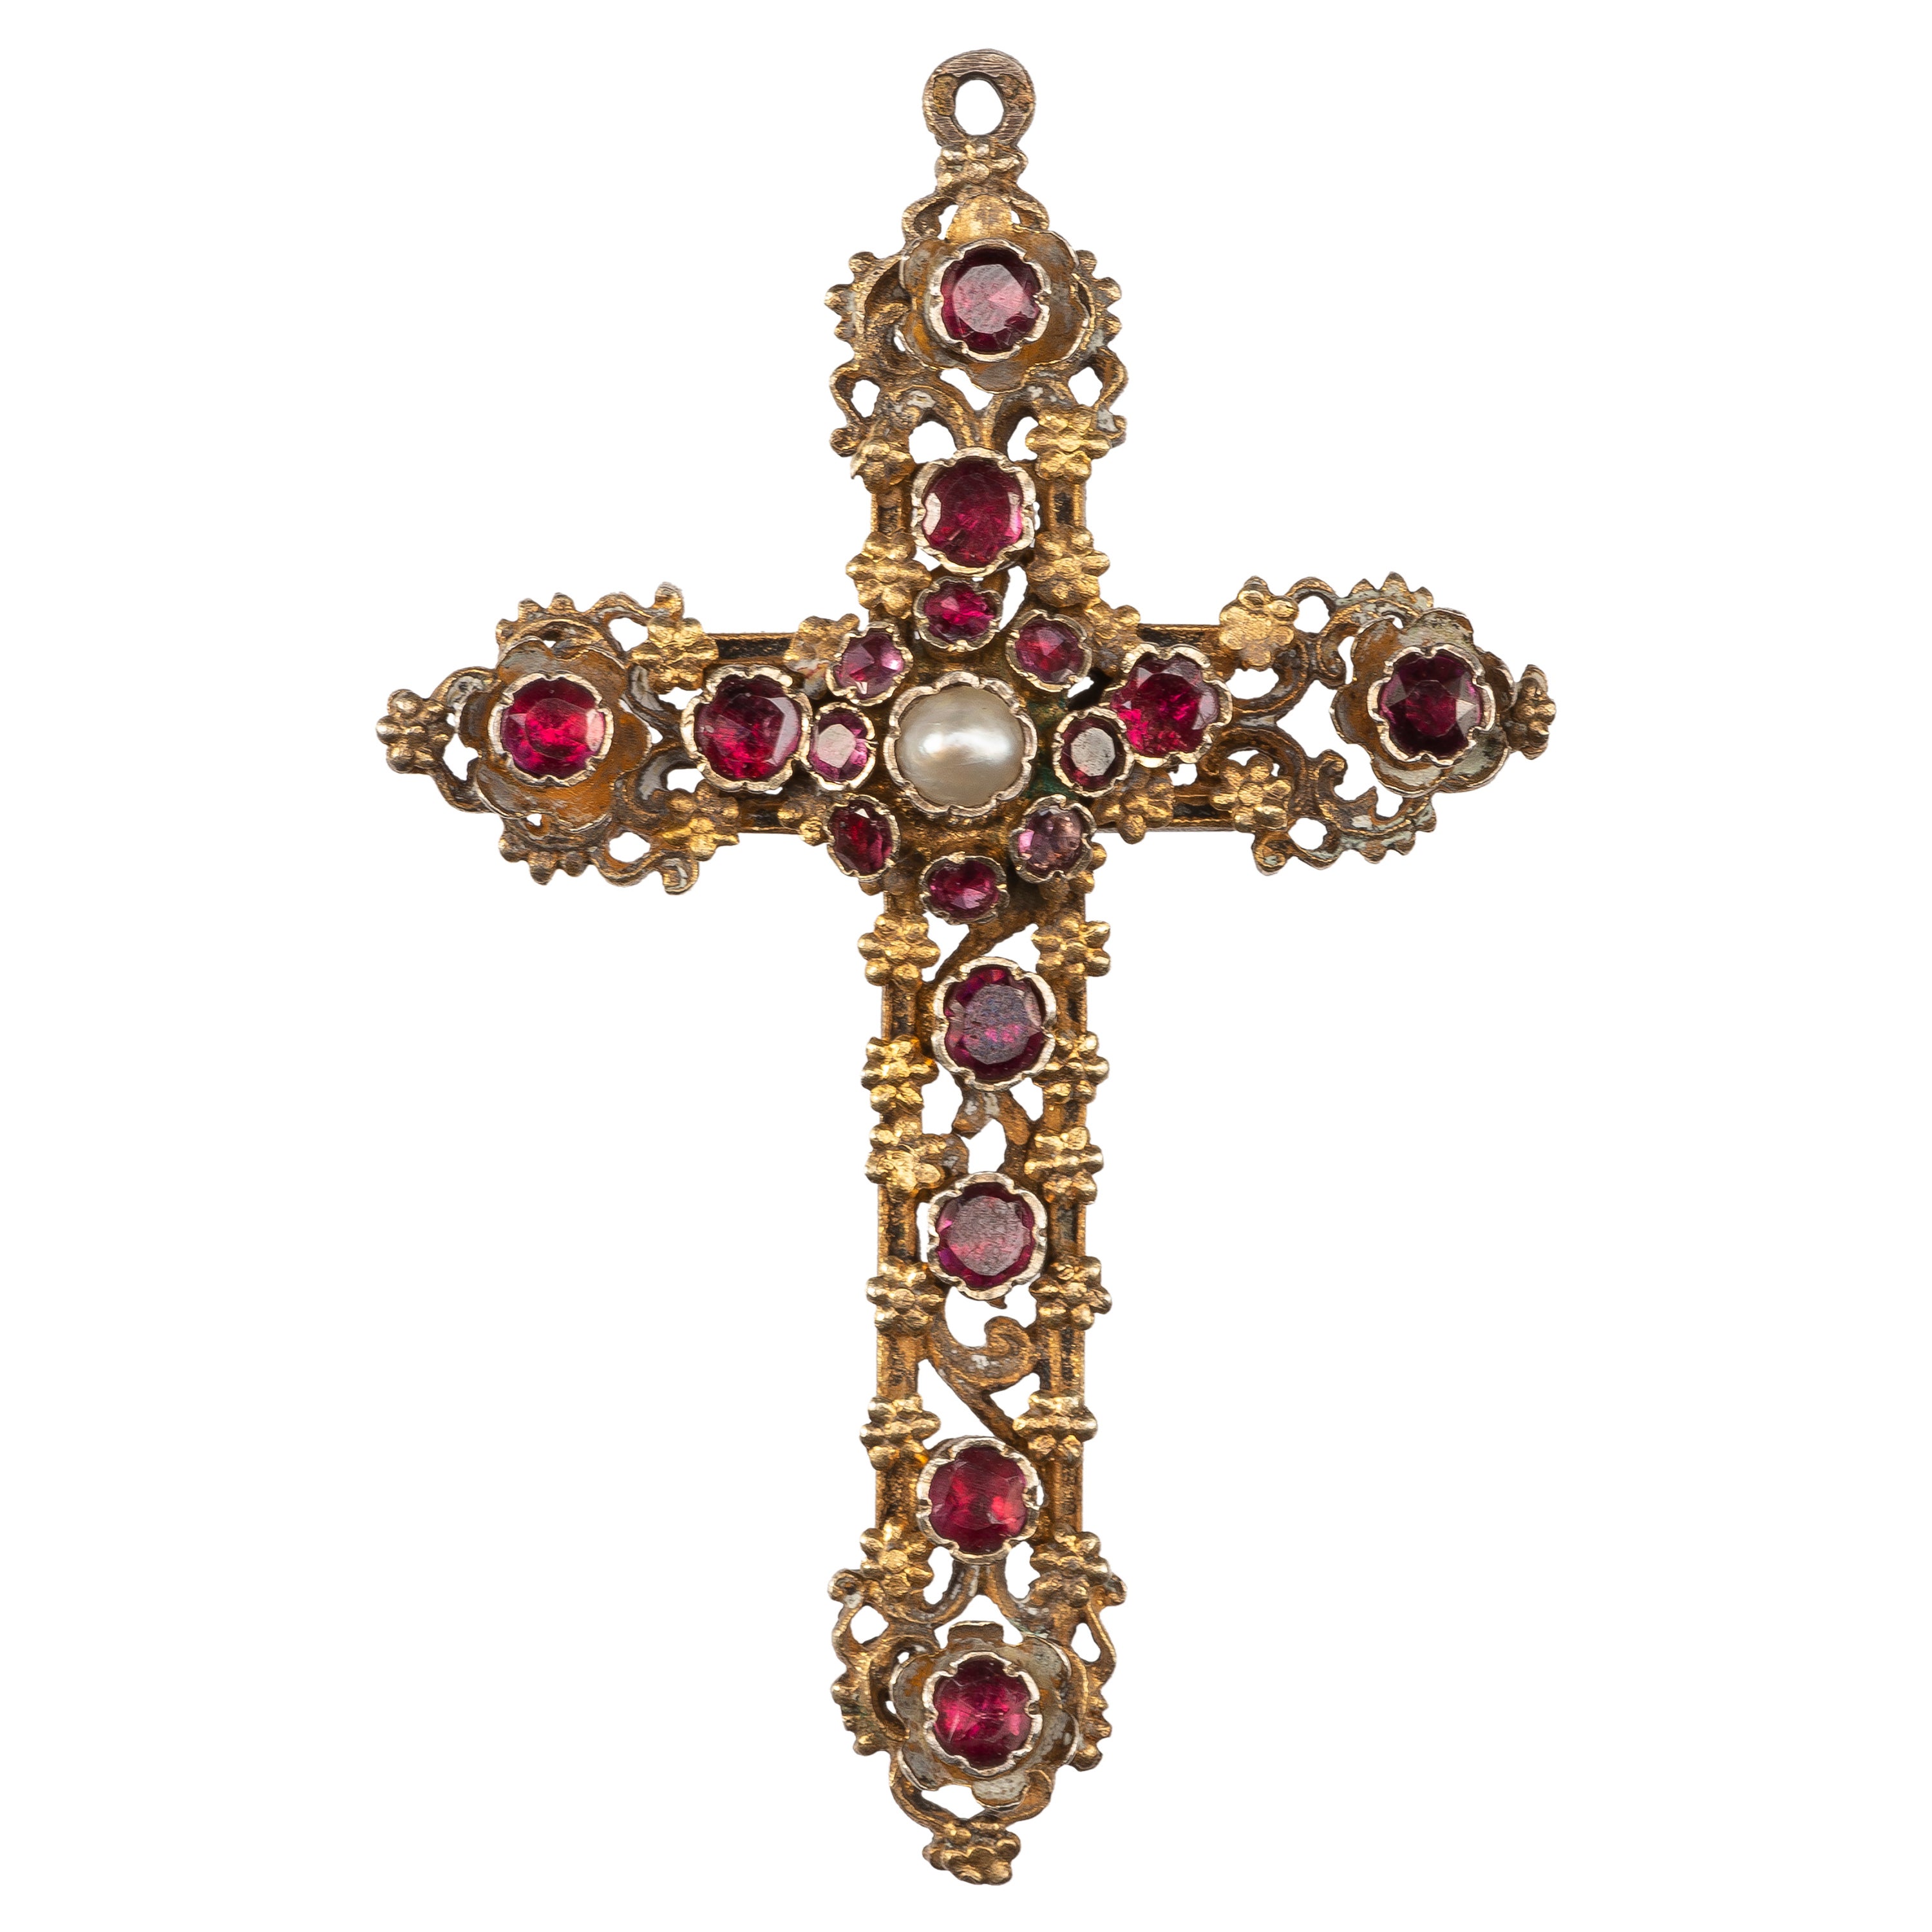 Antique Renaissance Revival Cross Pendant with Pearl